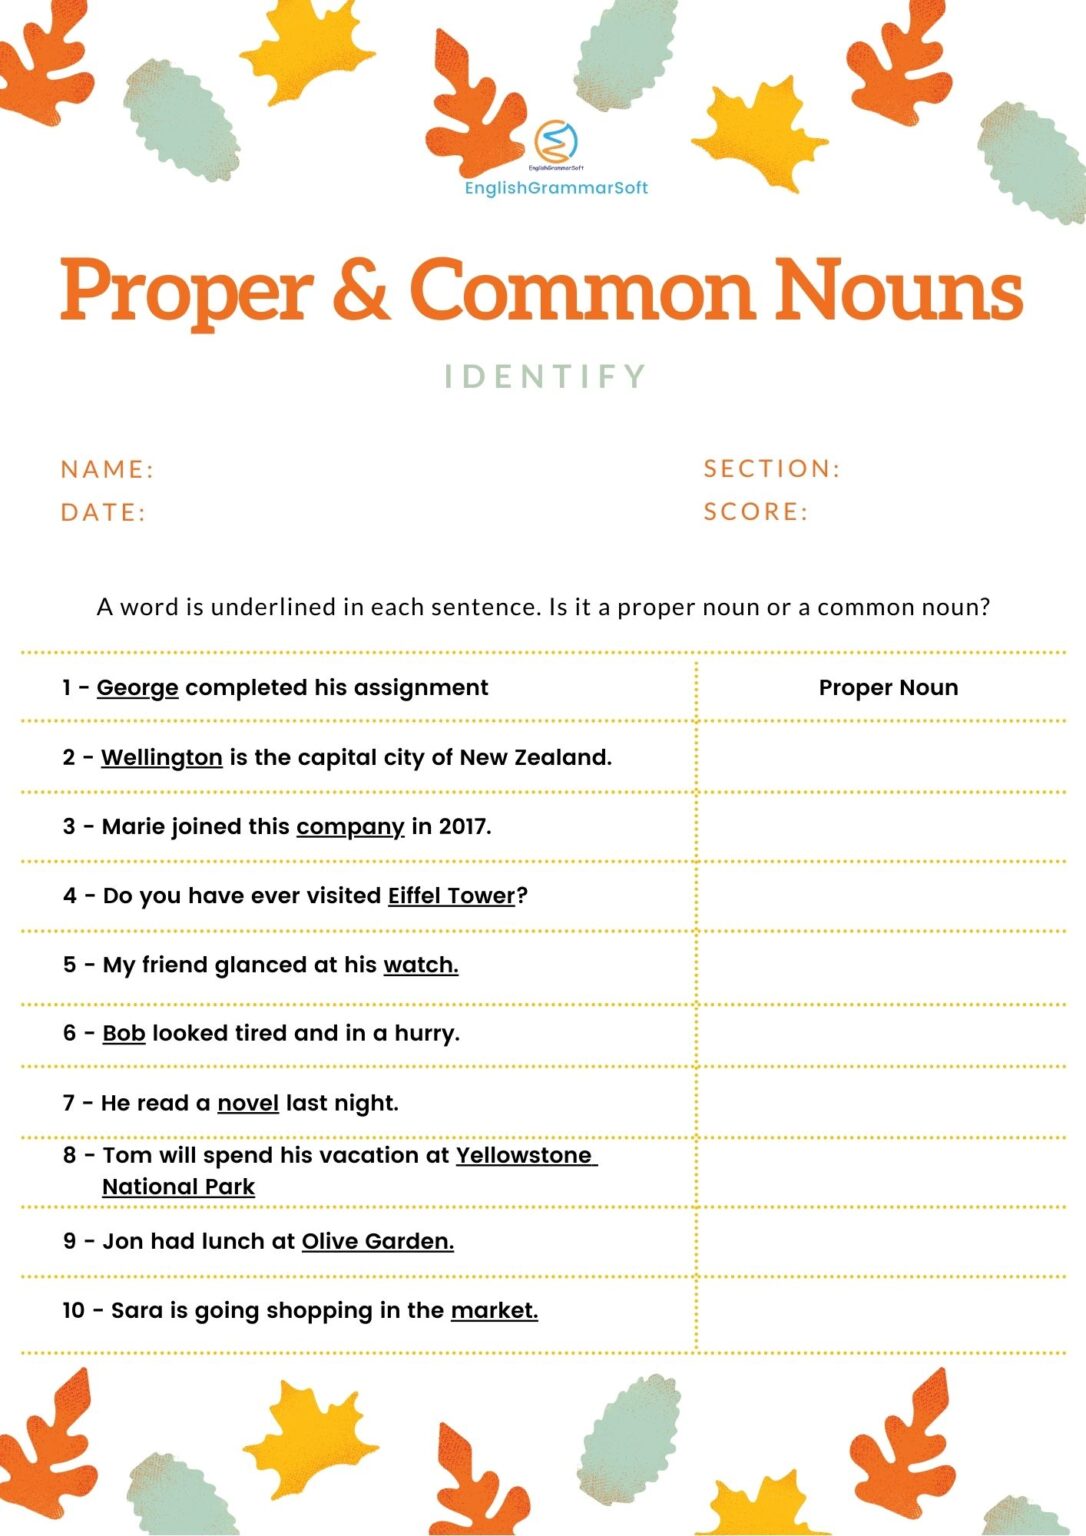 Proper Nouns And Common Nouns Detailed Lesson Plan Proper Nouns Vrogue